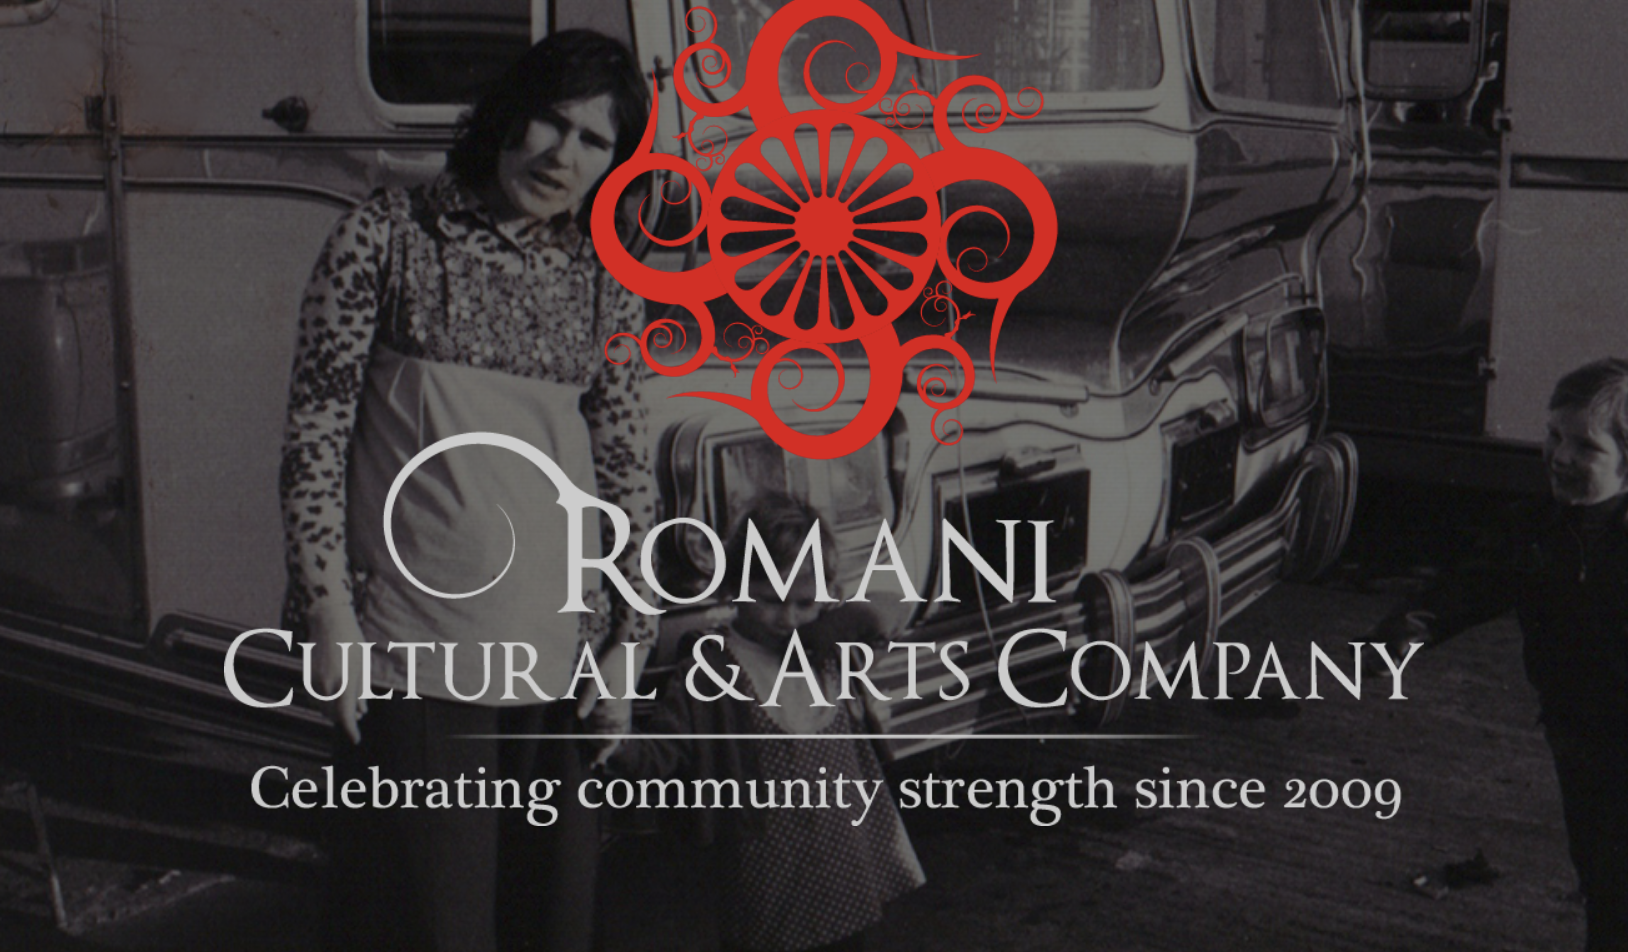 Romani cultural and arts company logo